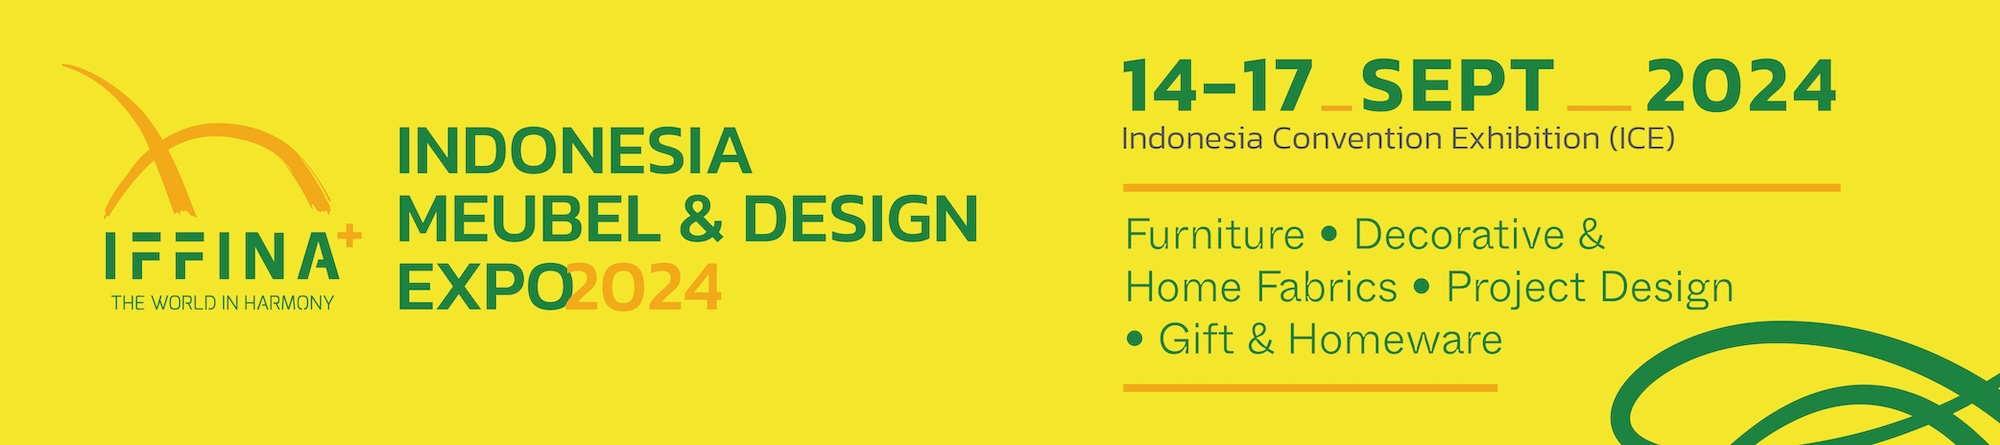 iffina (indonesia meubel & design expo 2024)